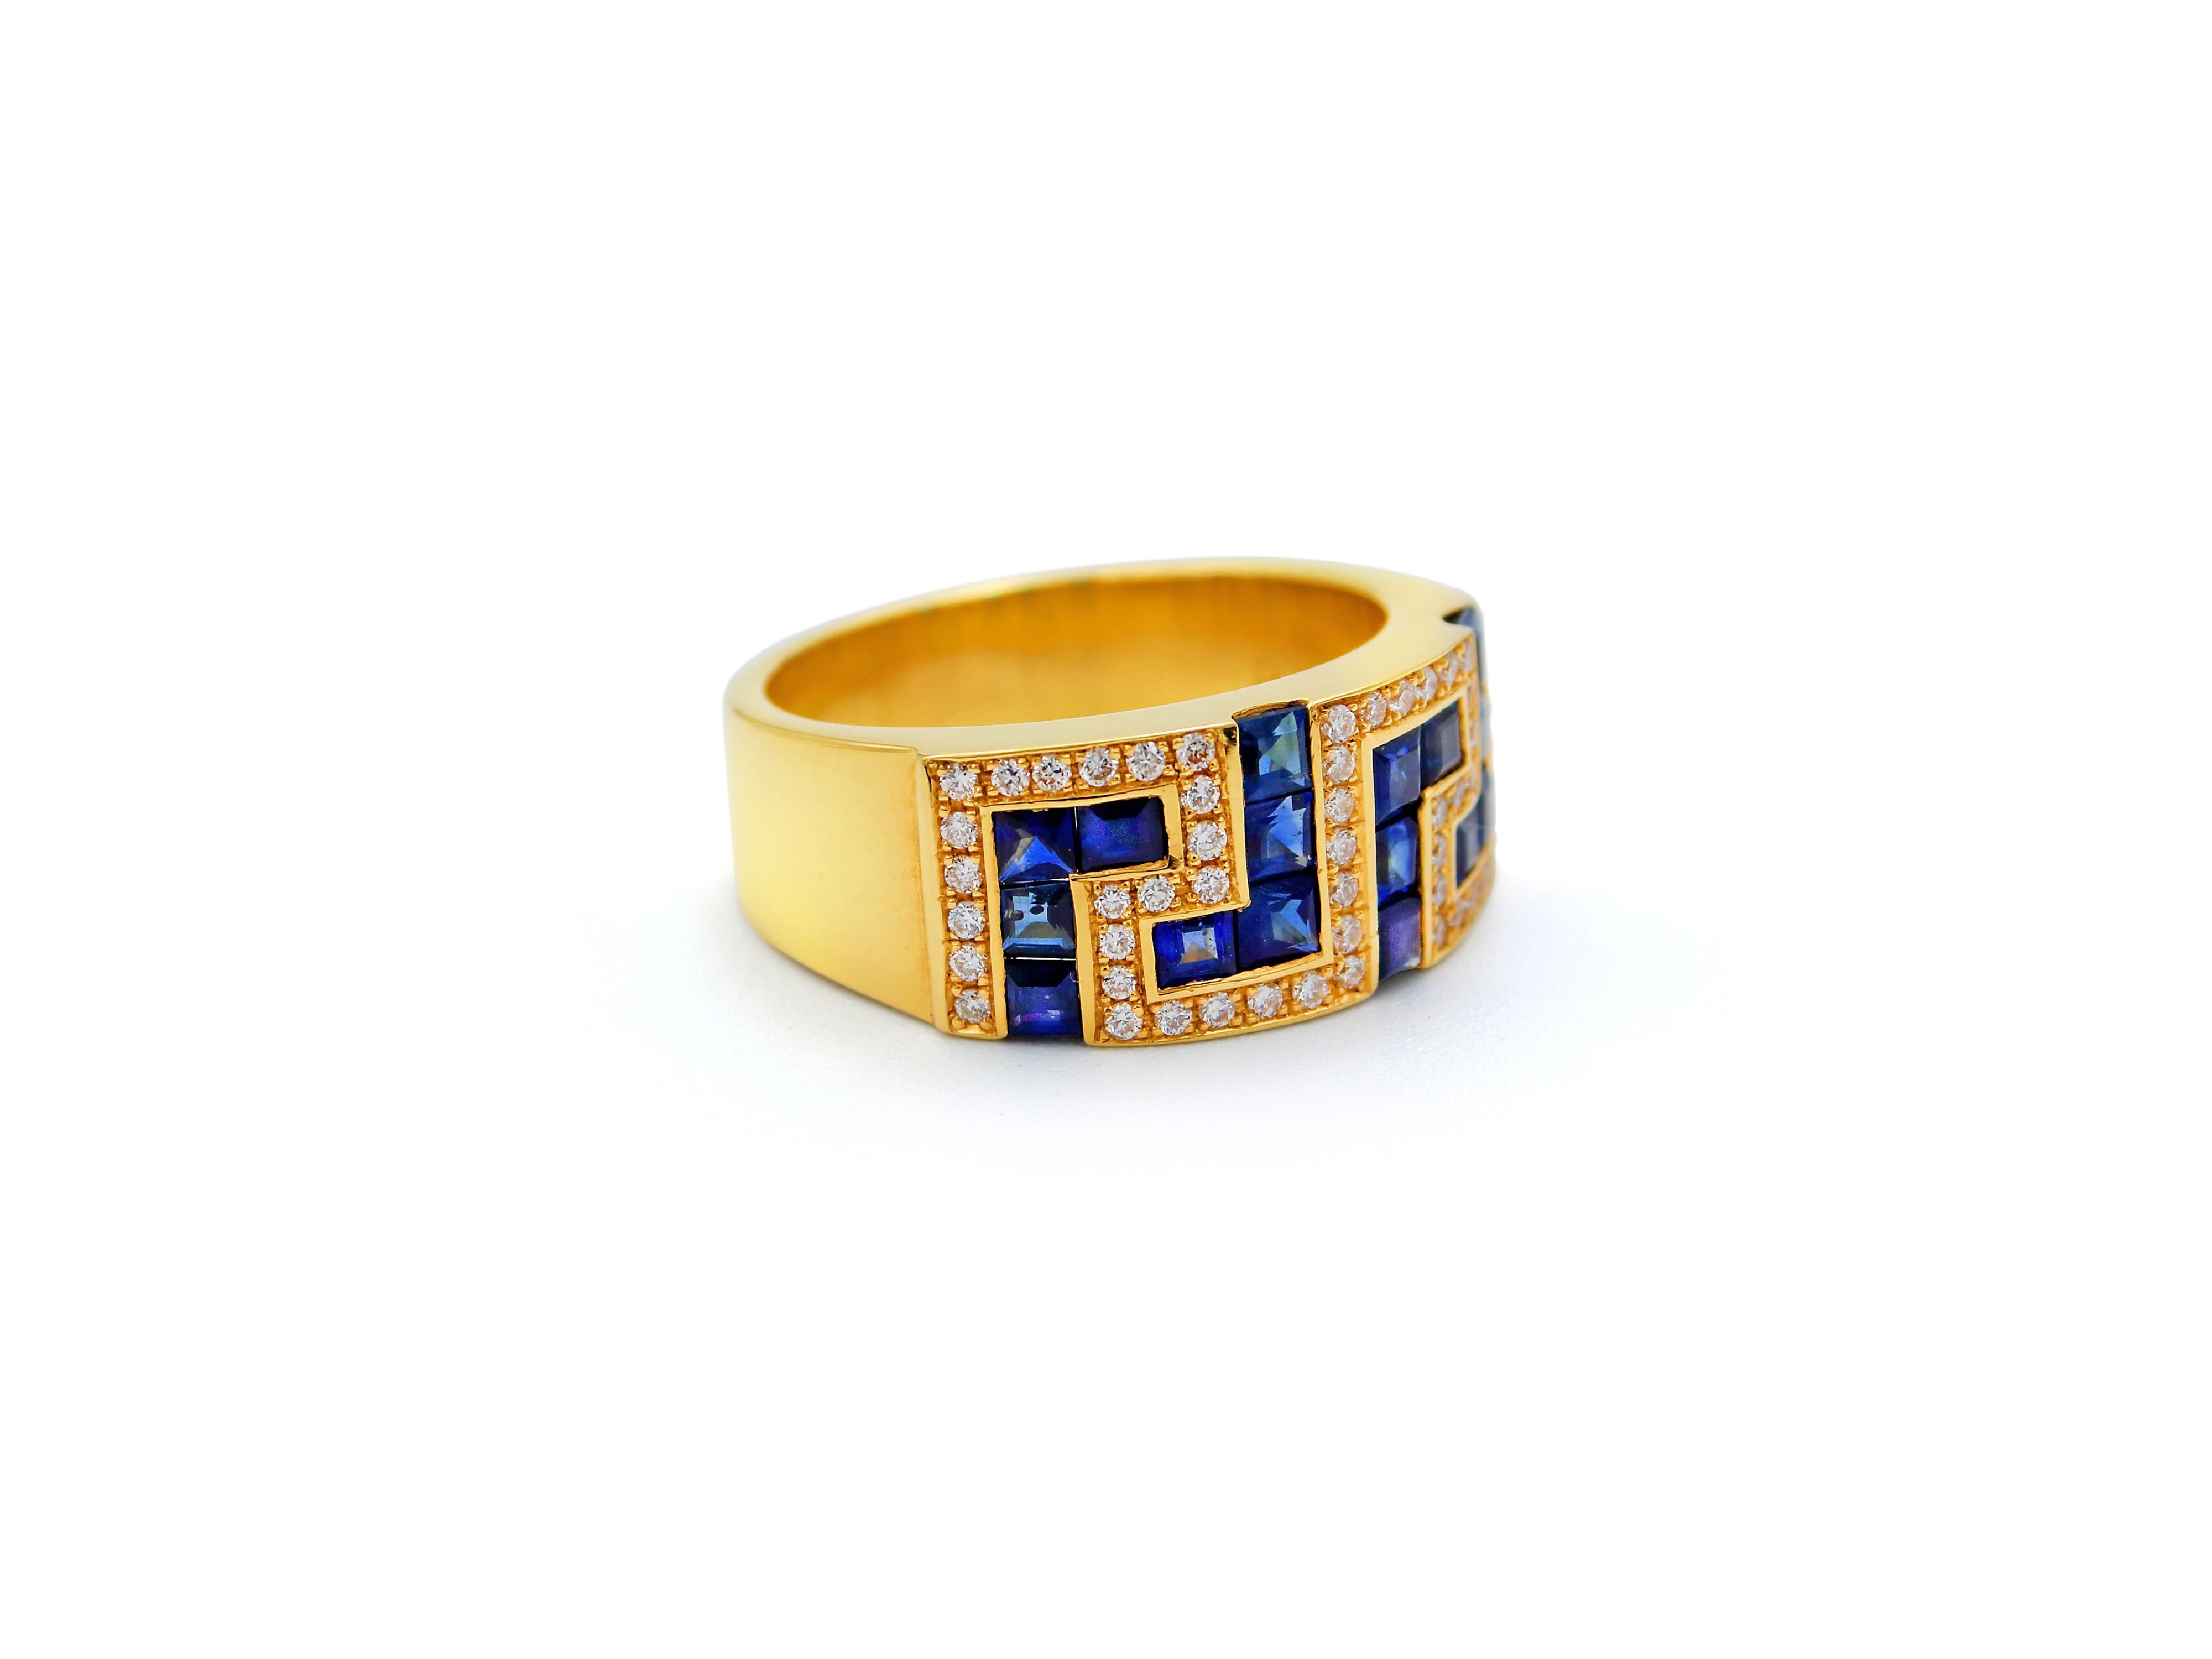 Bague anneau clé grecque en or jaune 18 carats Clé grecque sertie de 1,70 carats de saphirs bleus. Le cadre qui l'entoure est un pavage de diamants naturels de 0,40 carats qui ajoute lumière et luxe à la pièce. Le motif de la clé grecque est l'un